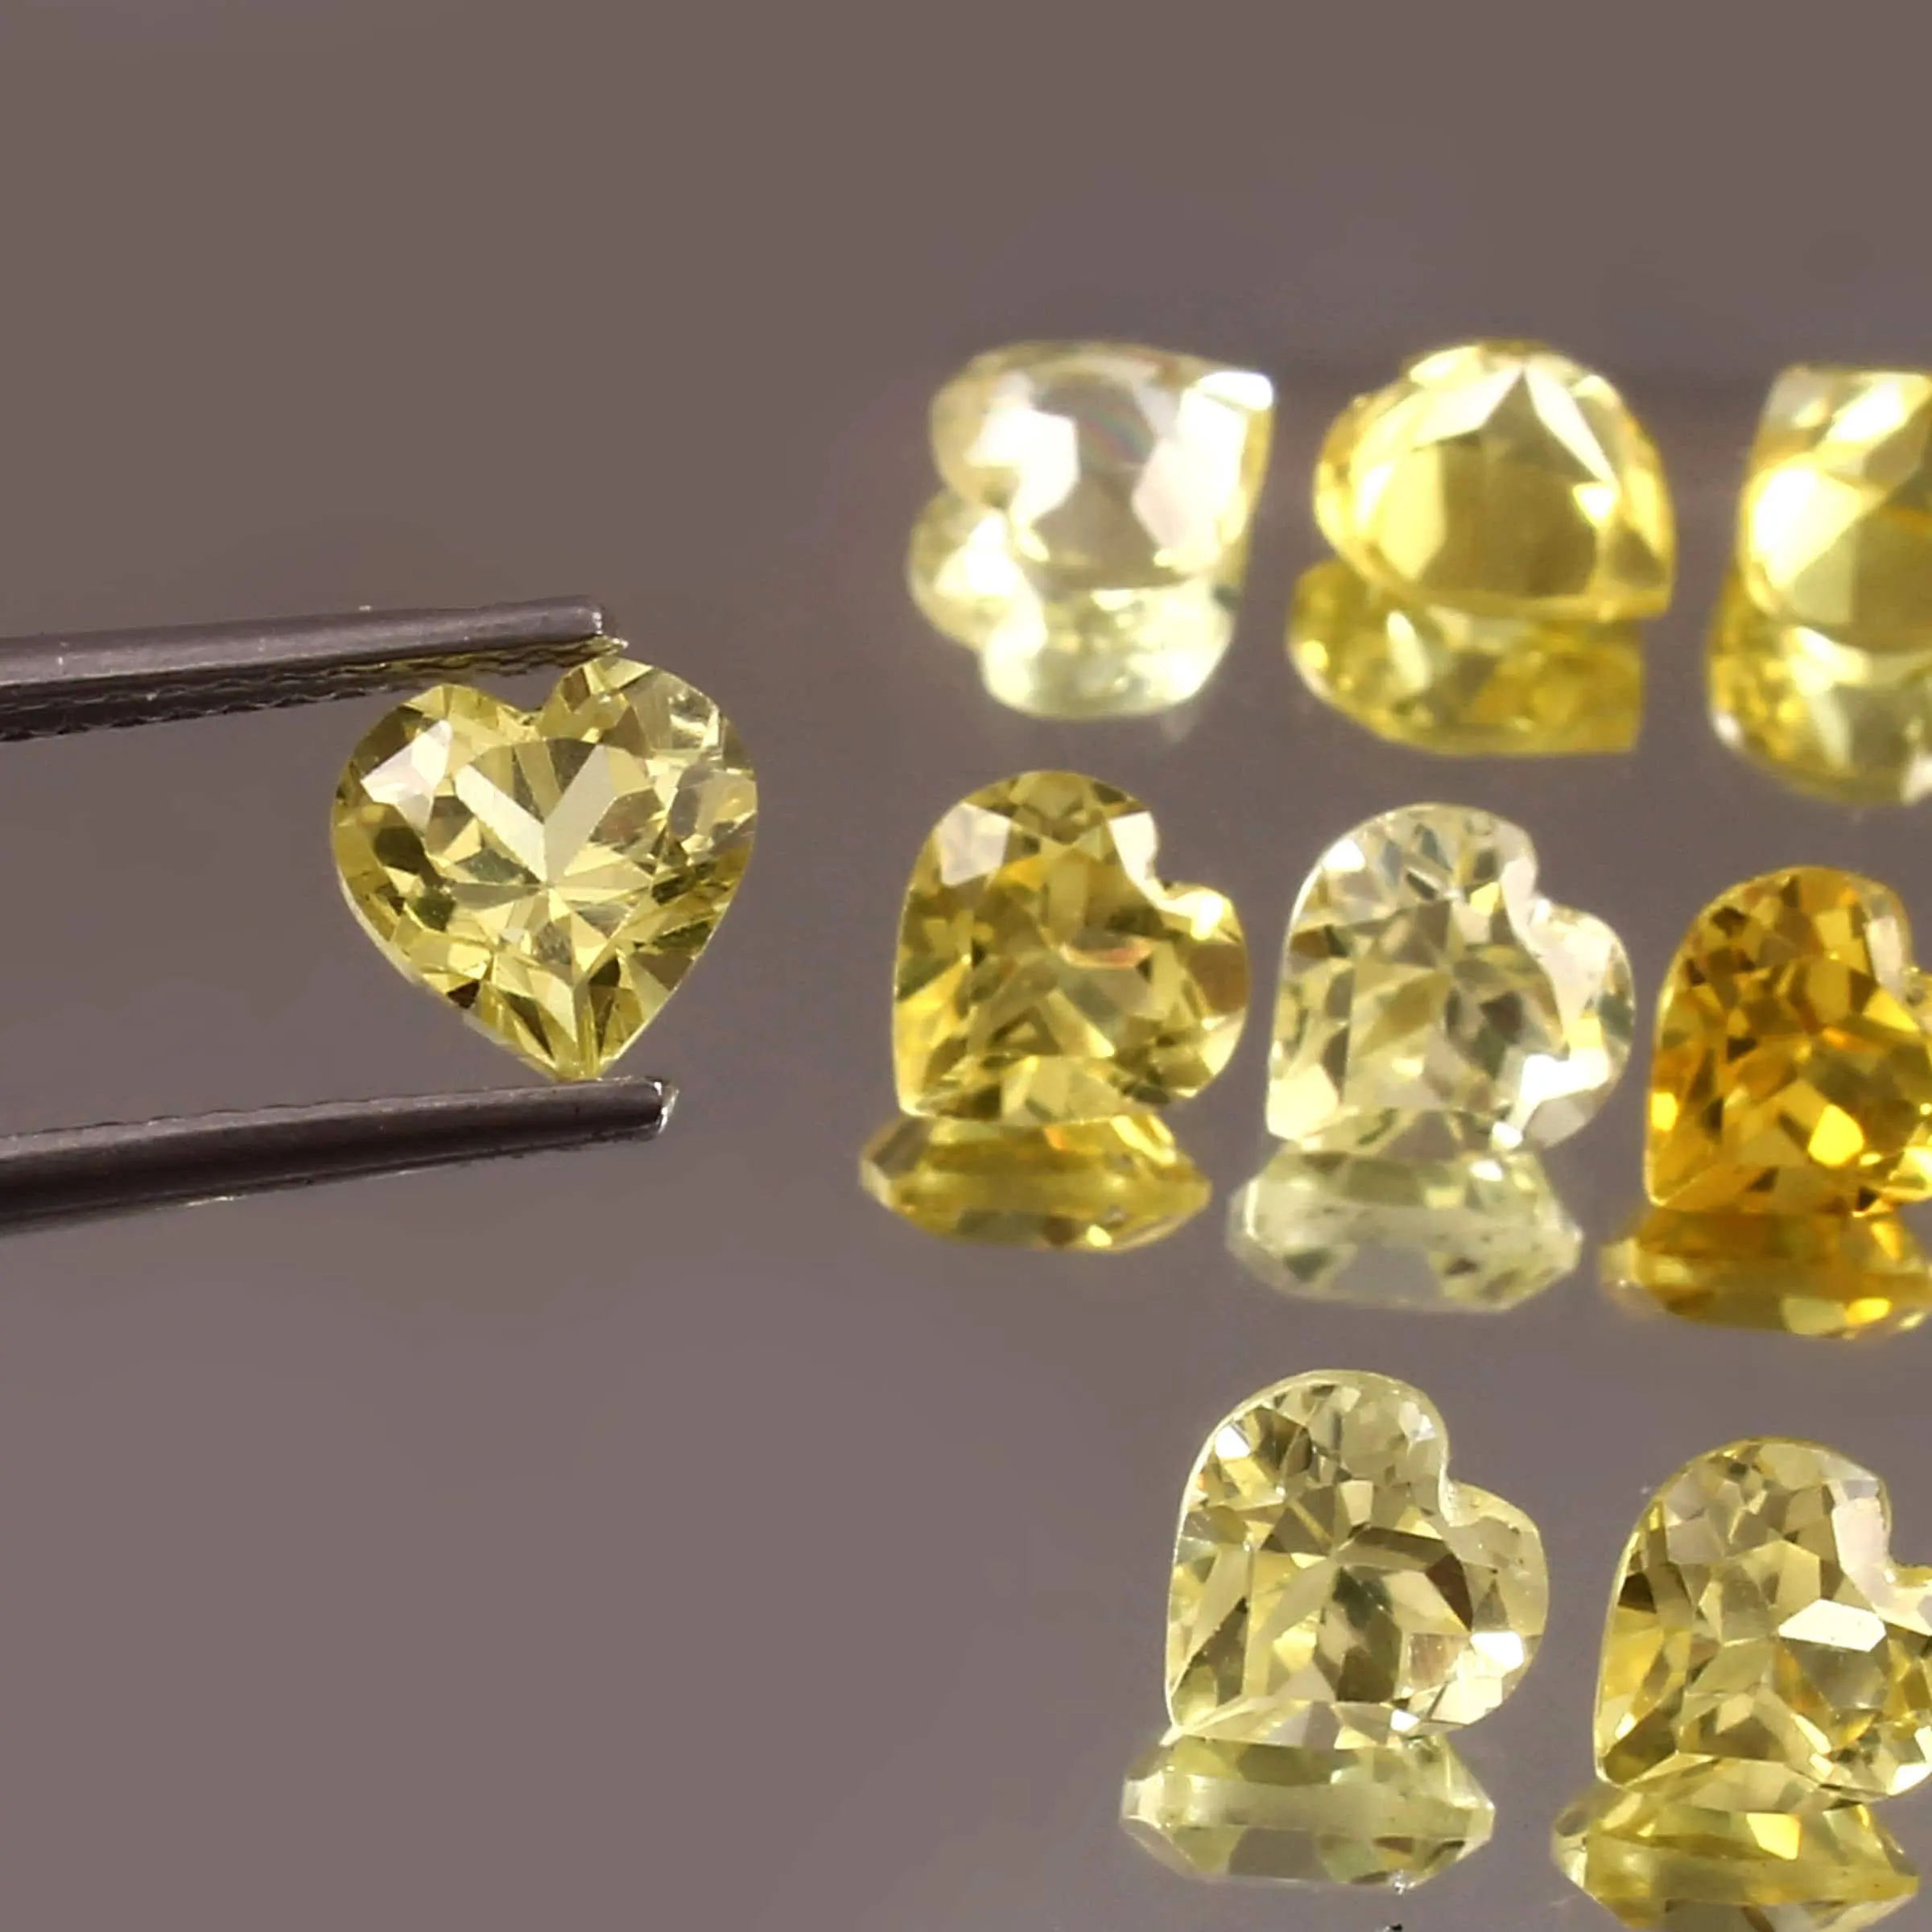 AAA-Qualität Labor gelber Saphir lockeres Herz Edelstein gelber Saphir abgestimmter Stein echte kalibrierte Größe verfügbar 5 mm bis 25 mm